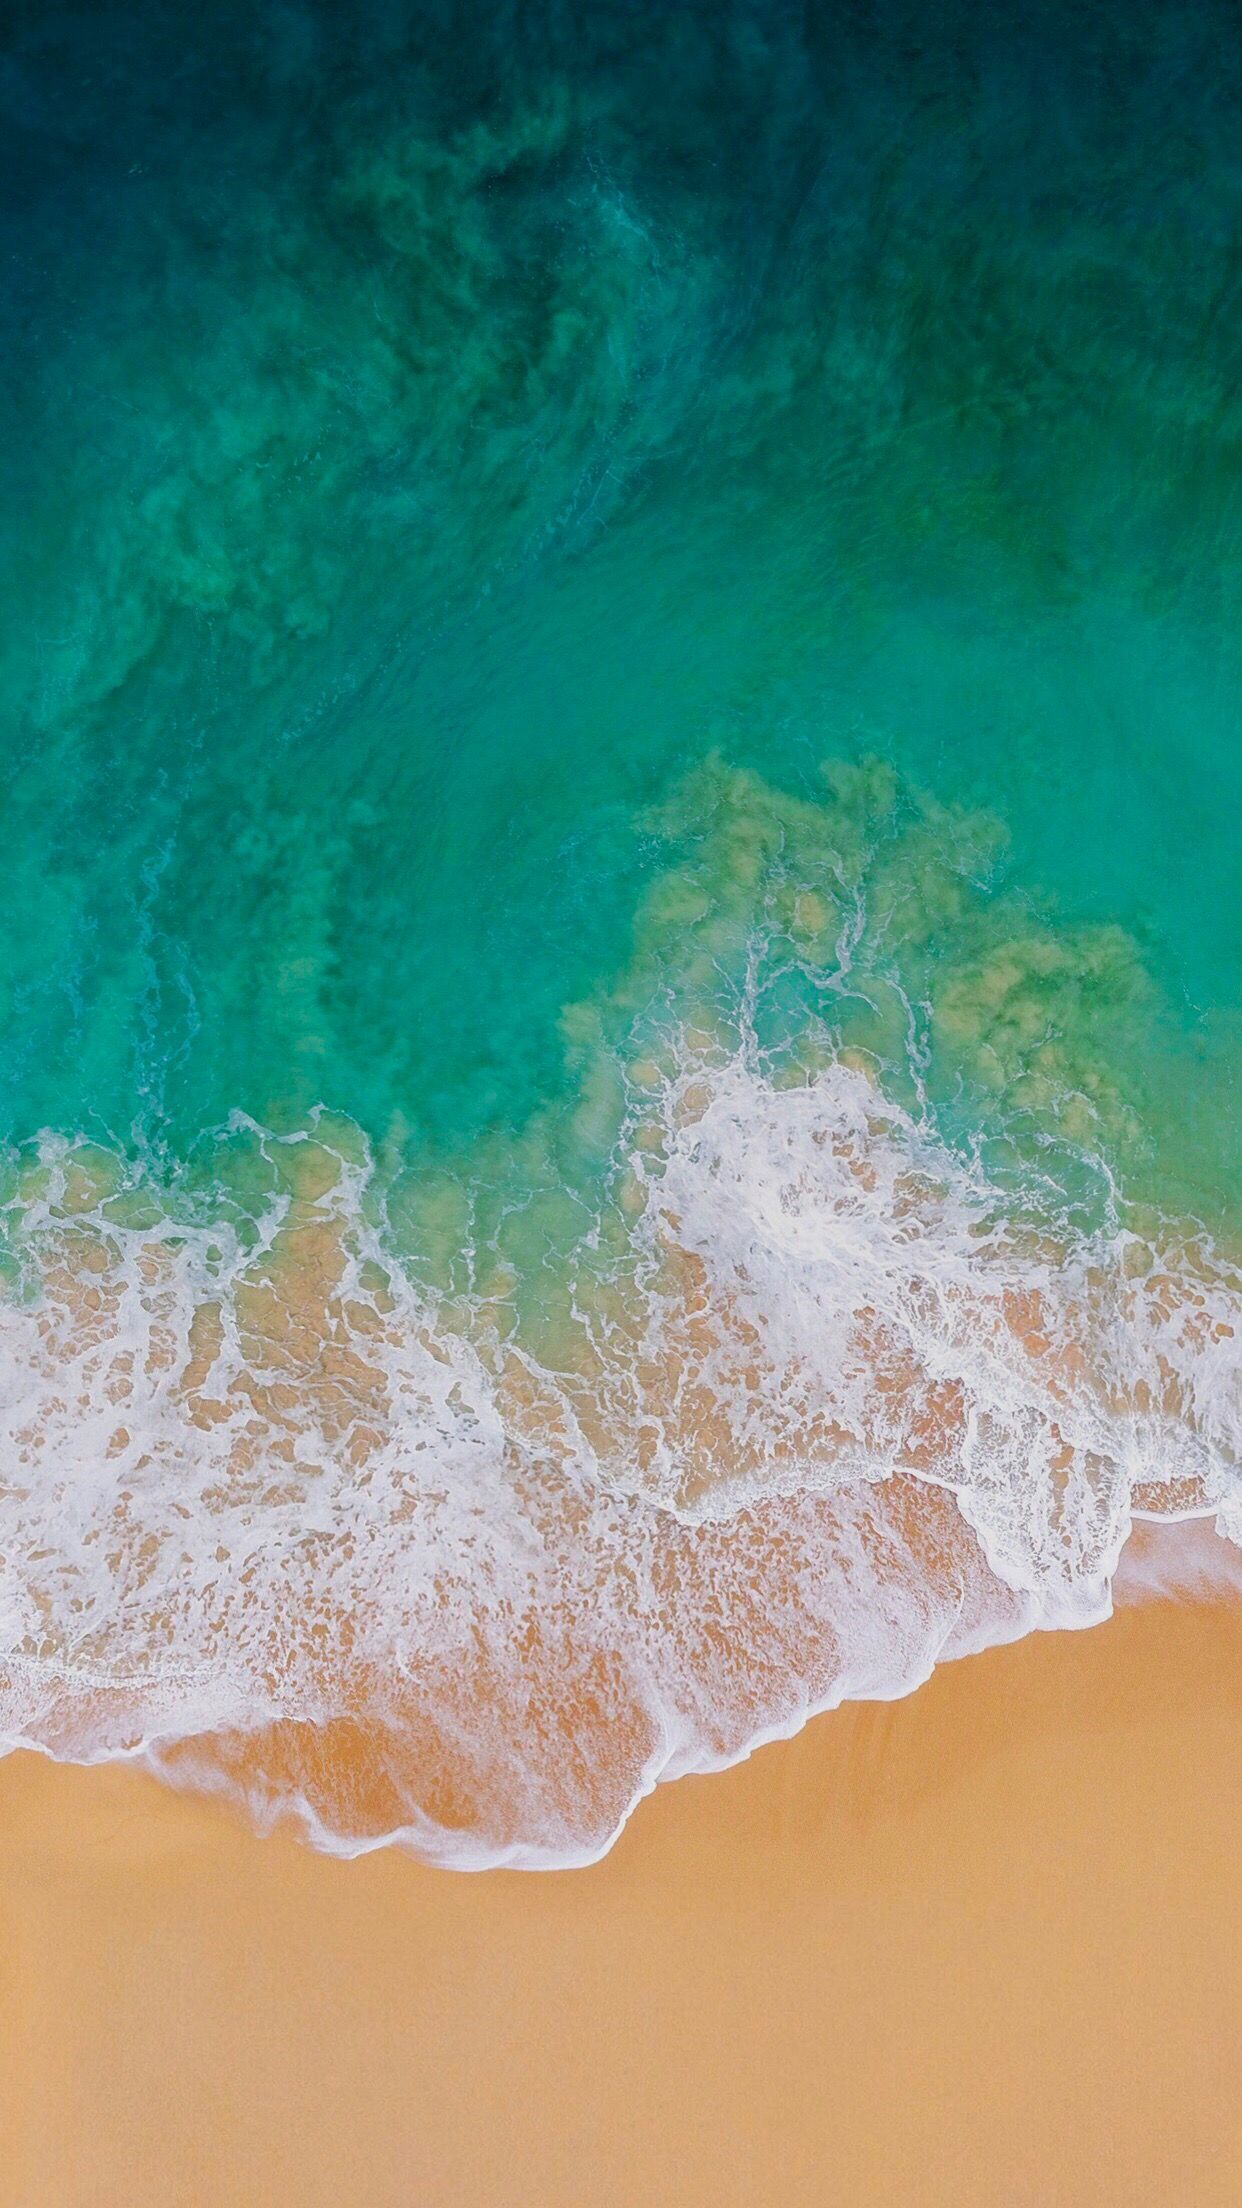 Điều gì khiến chiếc iPhone của bạn trở nên đặc biệt hơn? Đó là hình nền biển iPhone độc đáo! Hình ảnh là một tác phẩm nghệ thuật mang tính trừu tượng, thể hiện sự khéo léo trong thiết kế và sự phong phú của sắc màu. Hãy để chiếc iPhone của bạn thêm phần cá tính và độc đáo.